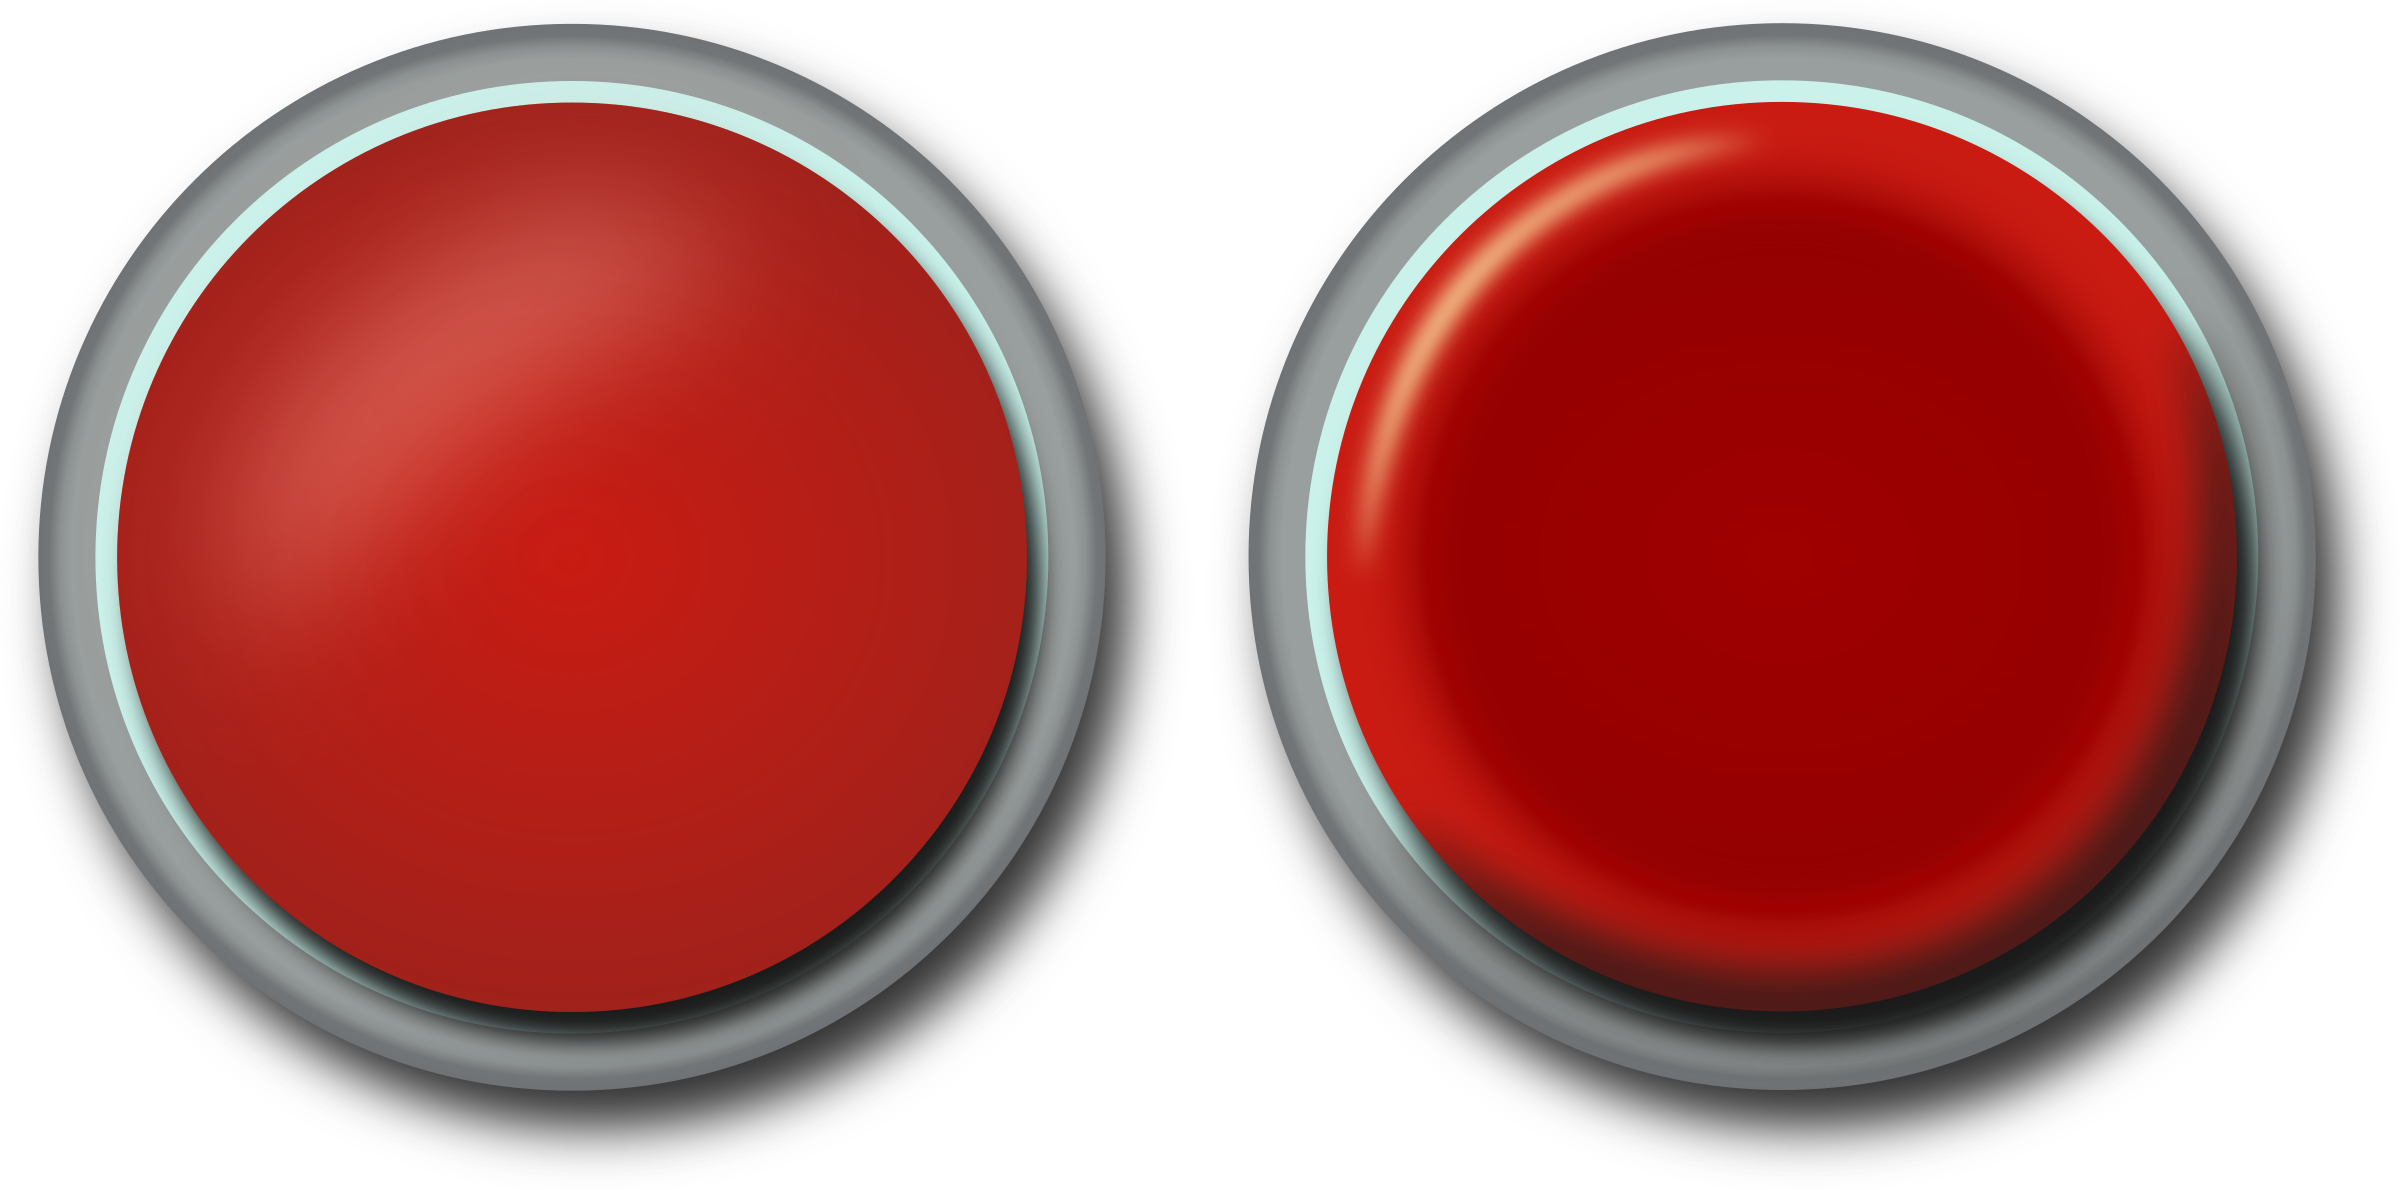 Нажми кнопку играть. Круглая кнопка. Красная кнопка. Нажатие кнопки. Изображение кнопки.